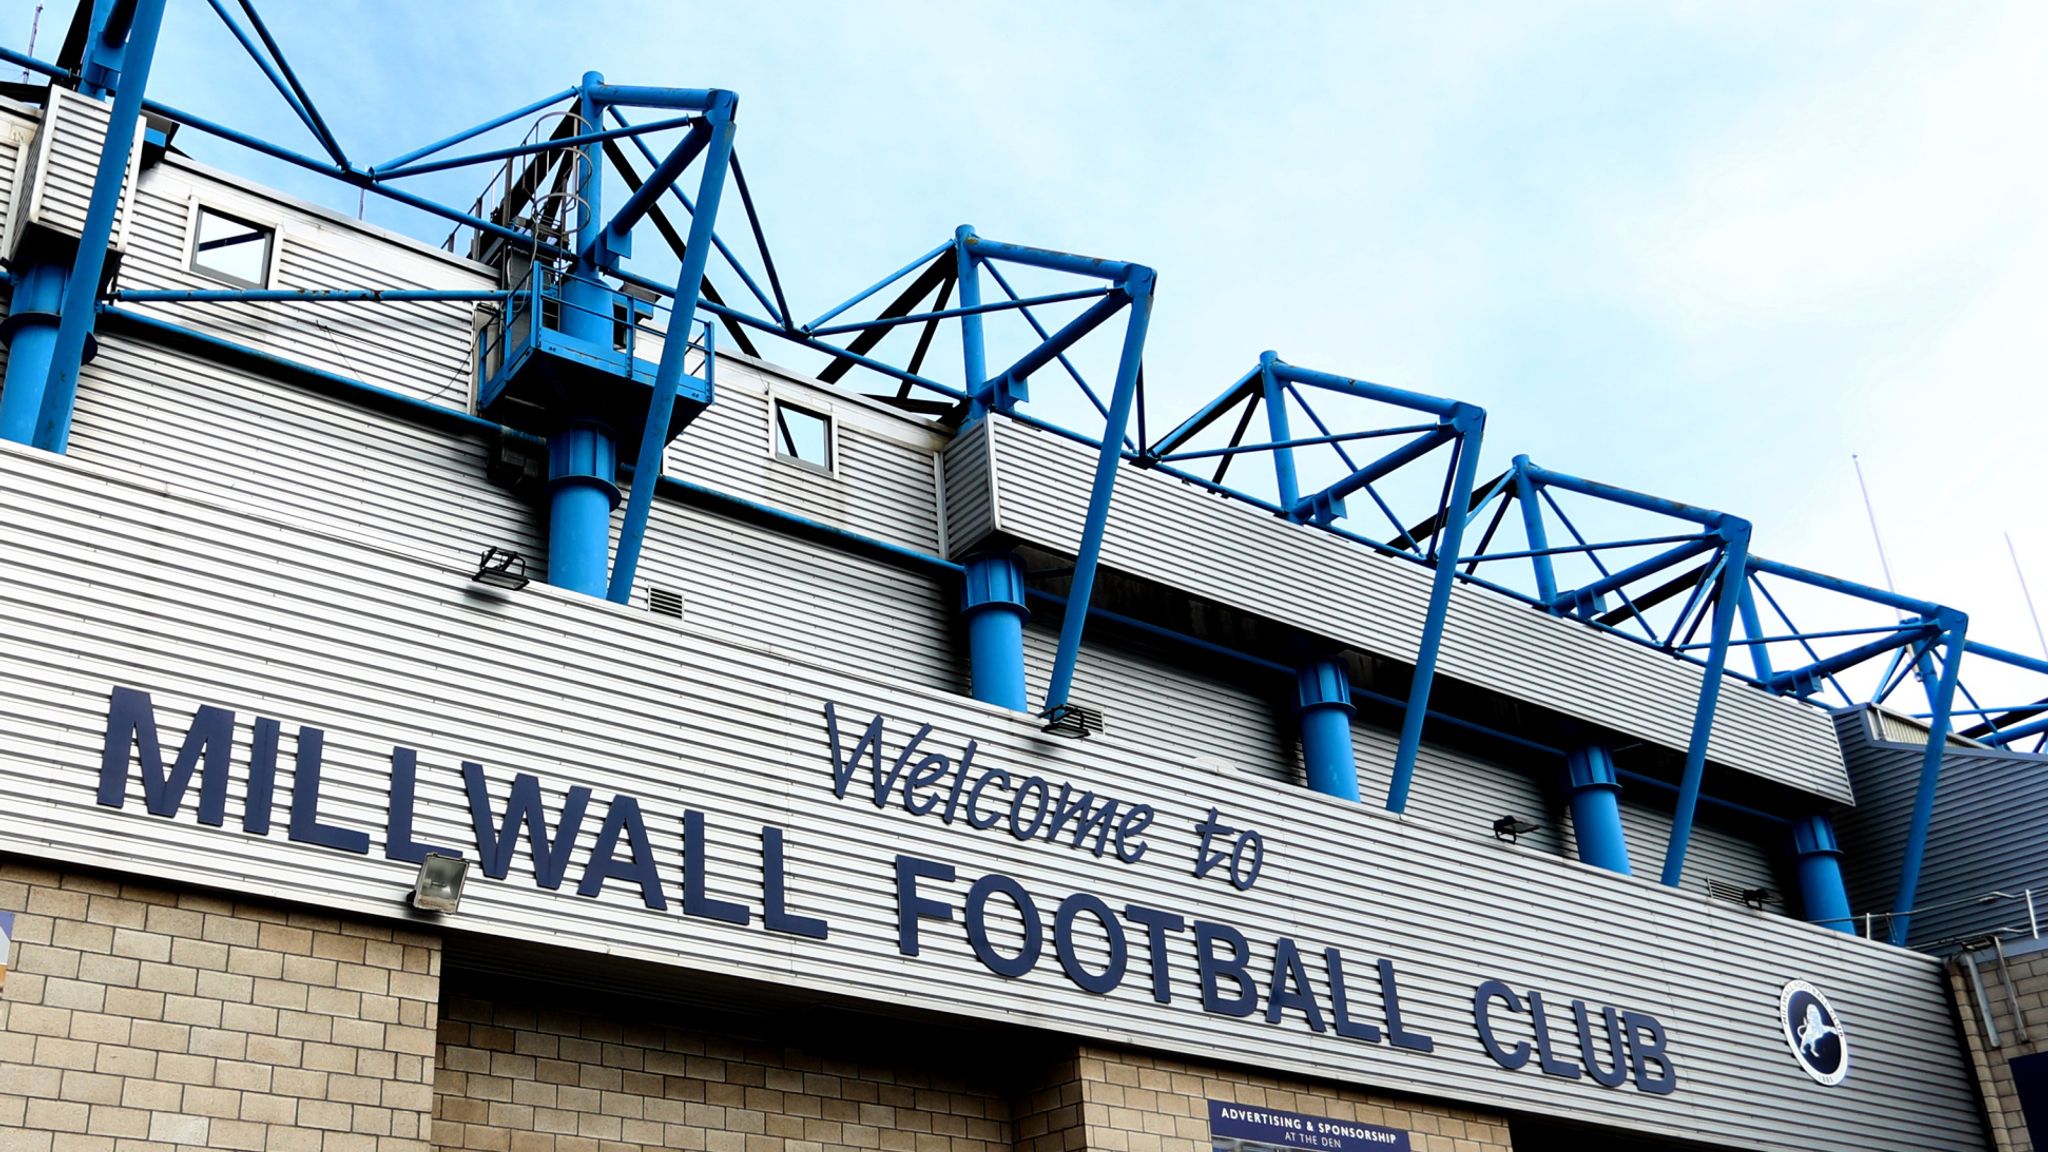 Millwall FC chief executive Steve Kavanagh says new training